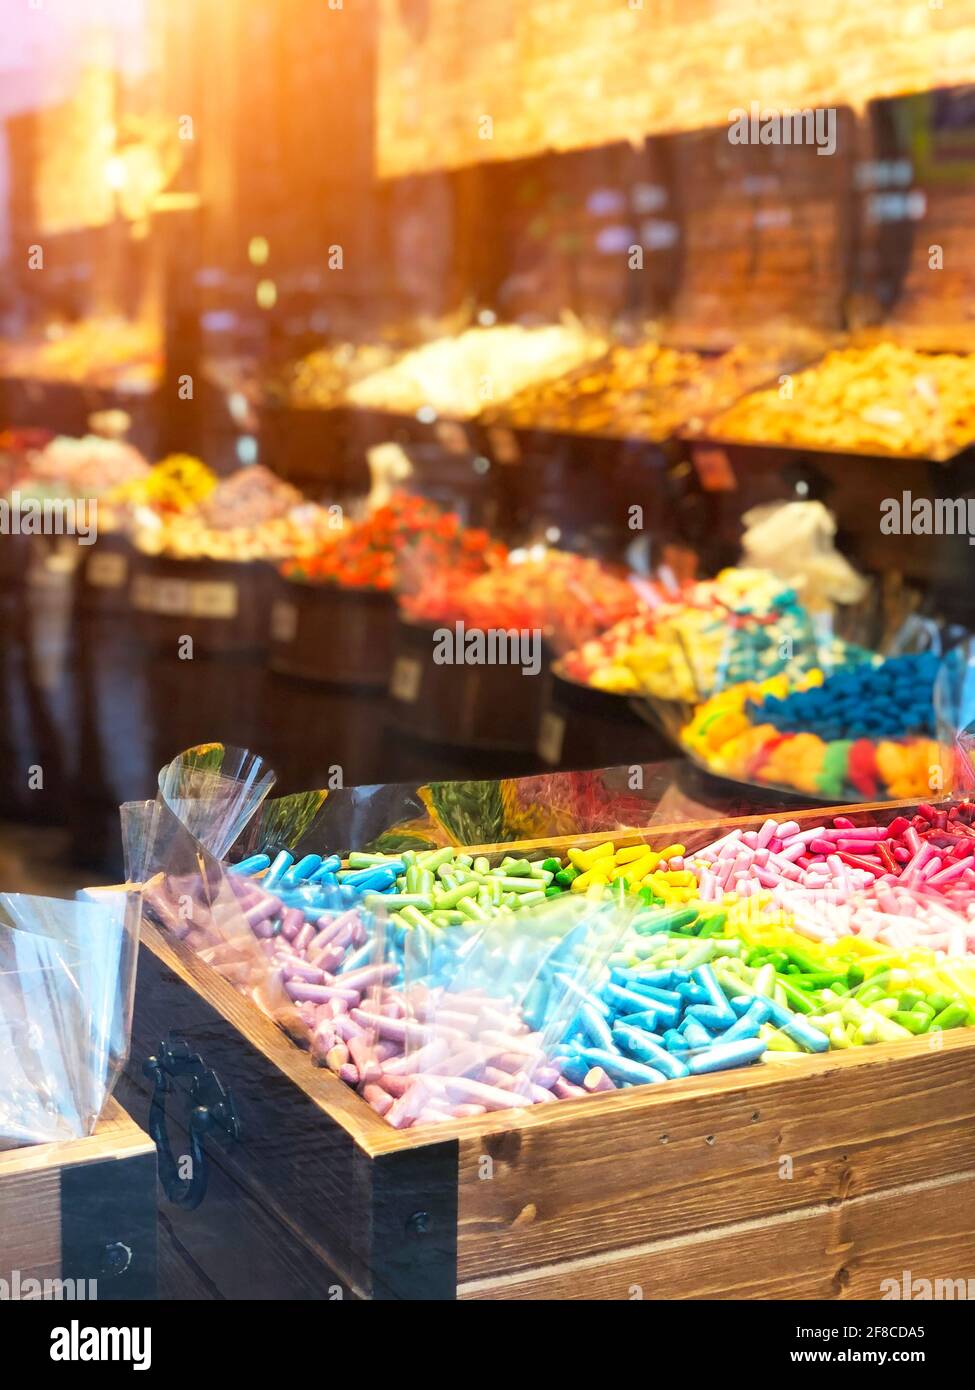 Sucreries sucettes sucreries colorées dans une boîte de poitrine derrière un vitrine en verre Banque D'Images